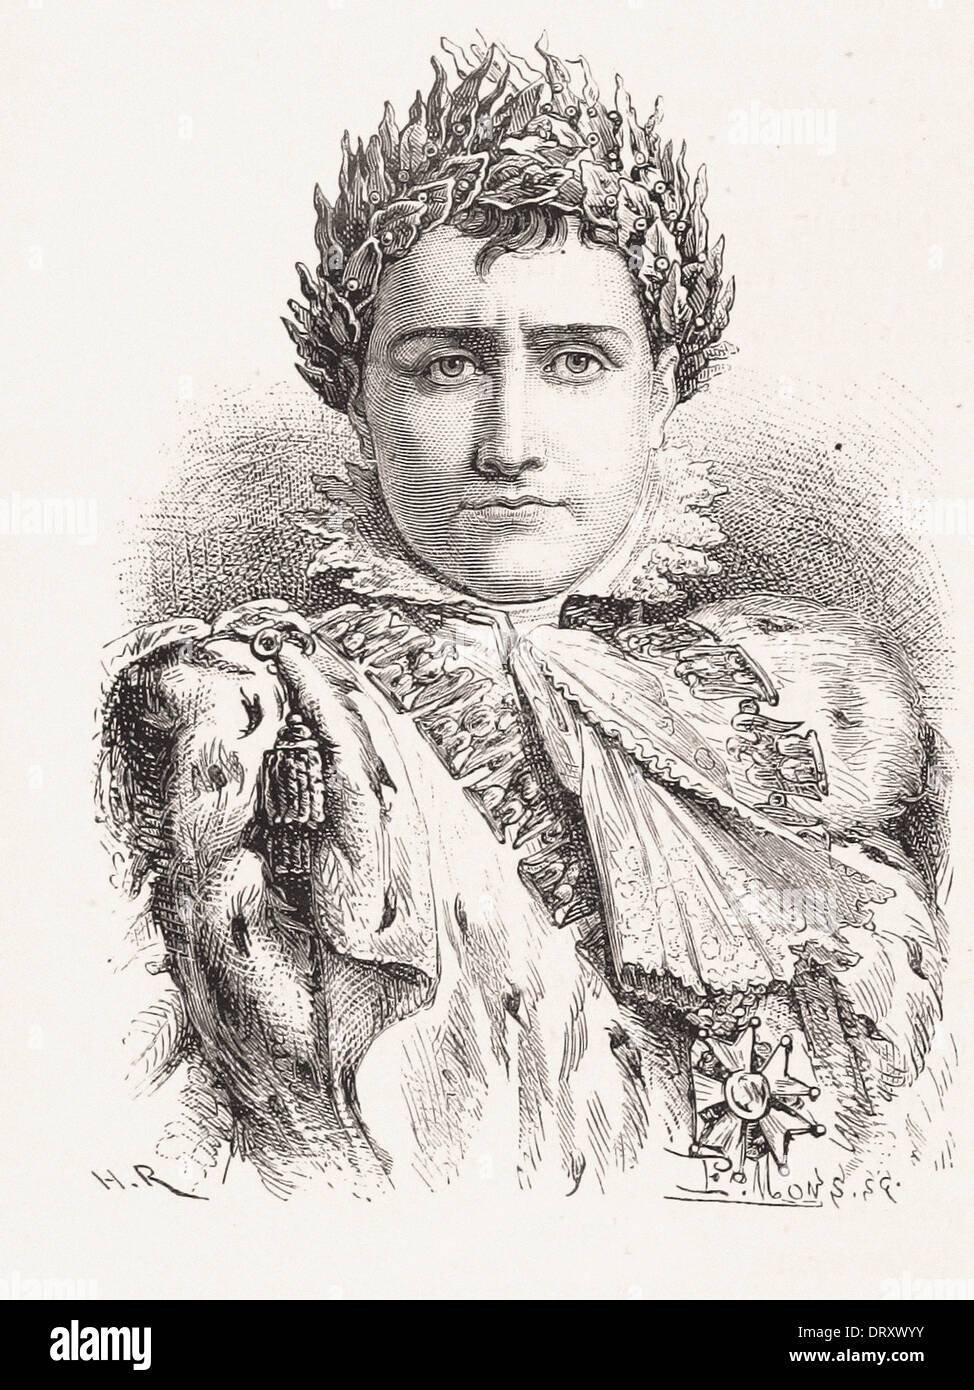 Portrait de Napoléon I empereur français - gravure XIX ème siècle français Banque D'Images